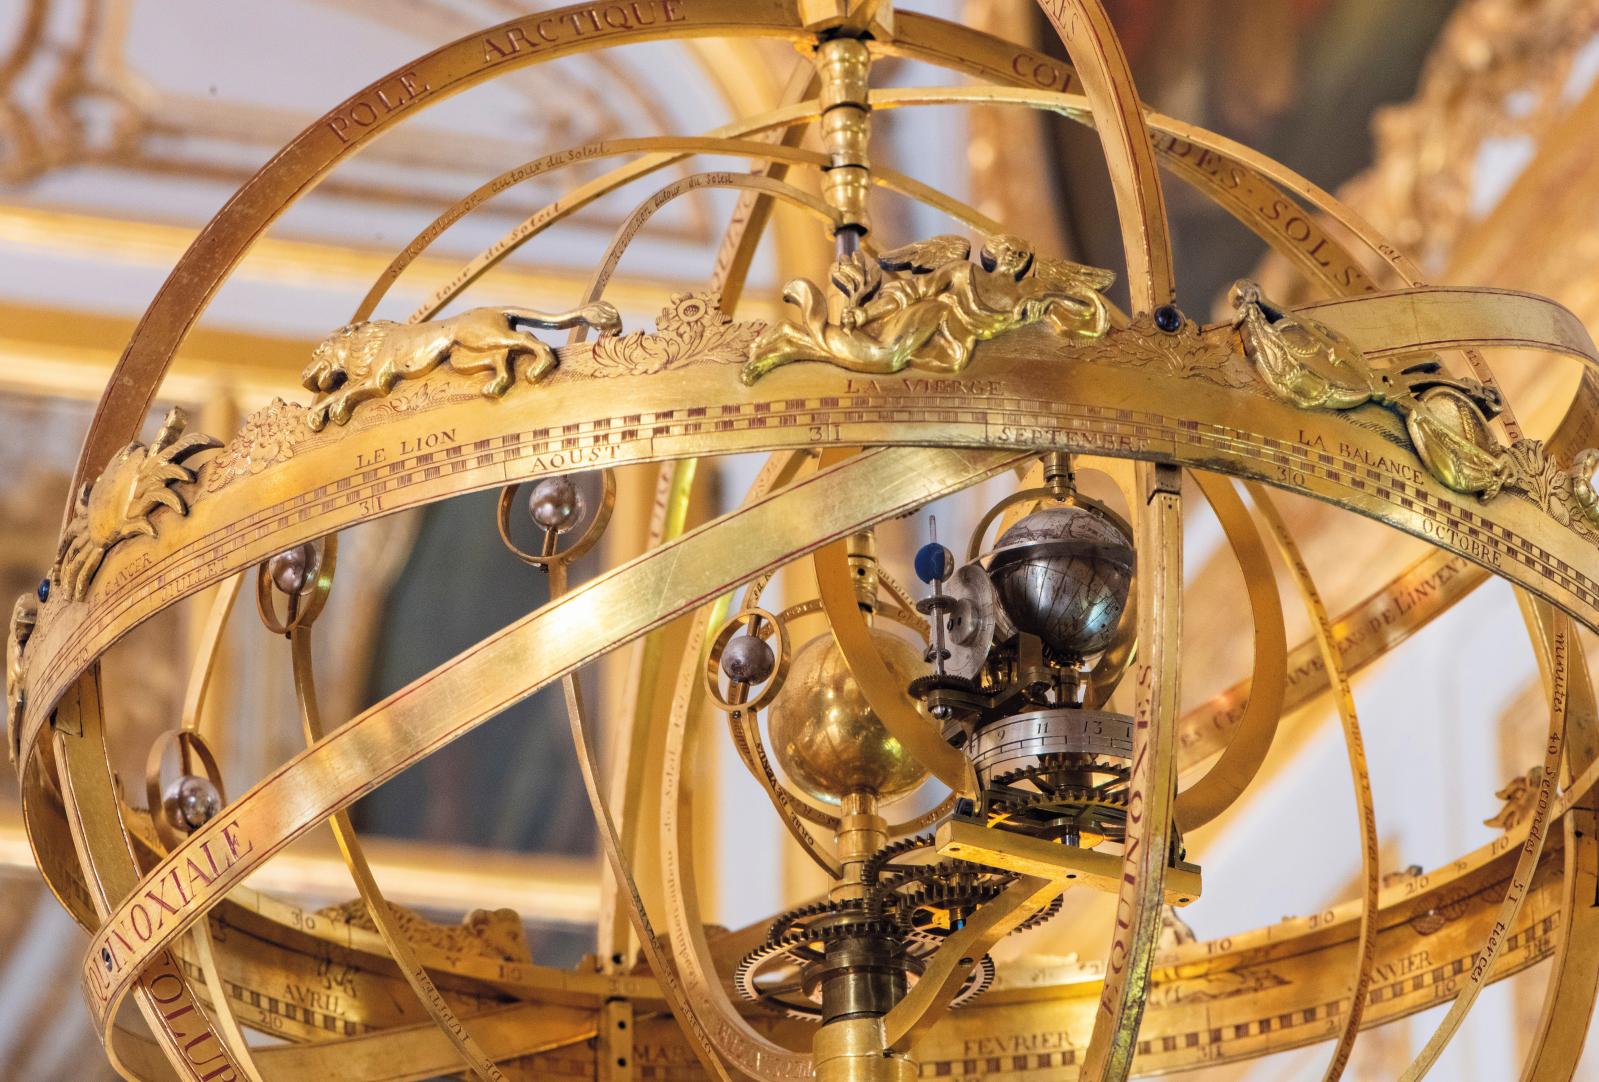 Le système planétaire de la pendule, avec les signes du zodiaque.© Château de Versailles, T. Garnier